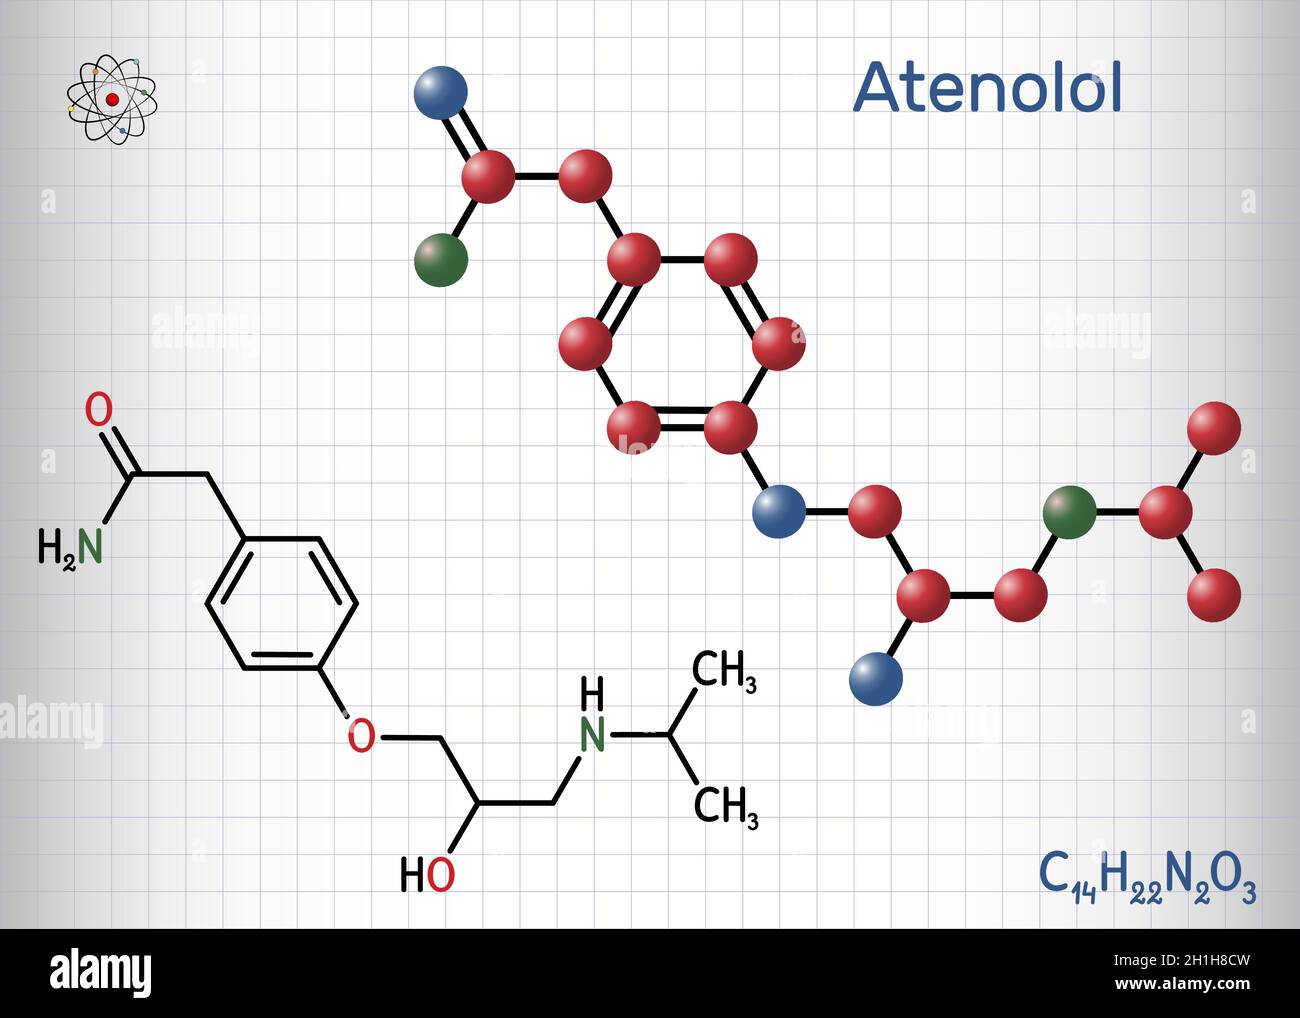 Atenolol cardioselektives Beta-Blocker-Molekül. Es handelt sich um eine  antihypertensive, hypotensive und antiarrhythmische Droge. Strukturelle  chemische Formel und Molekül Stock-Vektorgrafik - Alamy